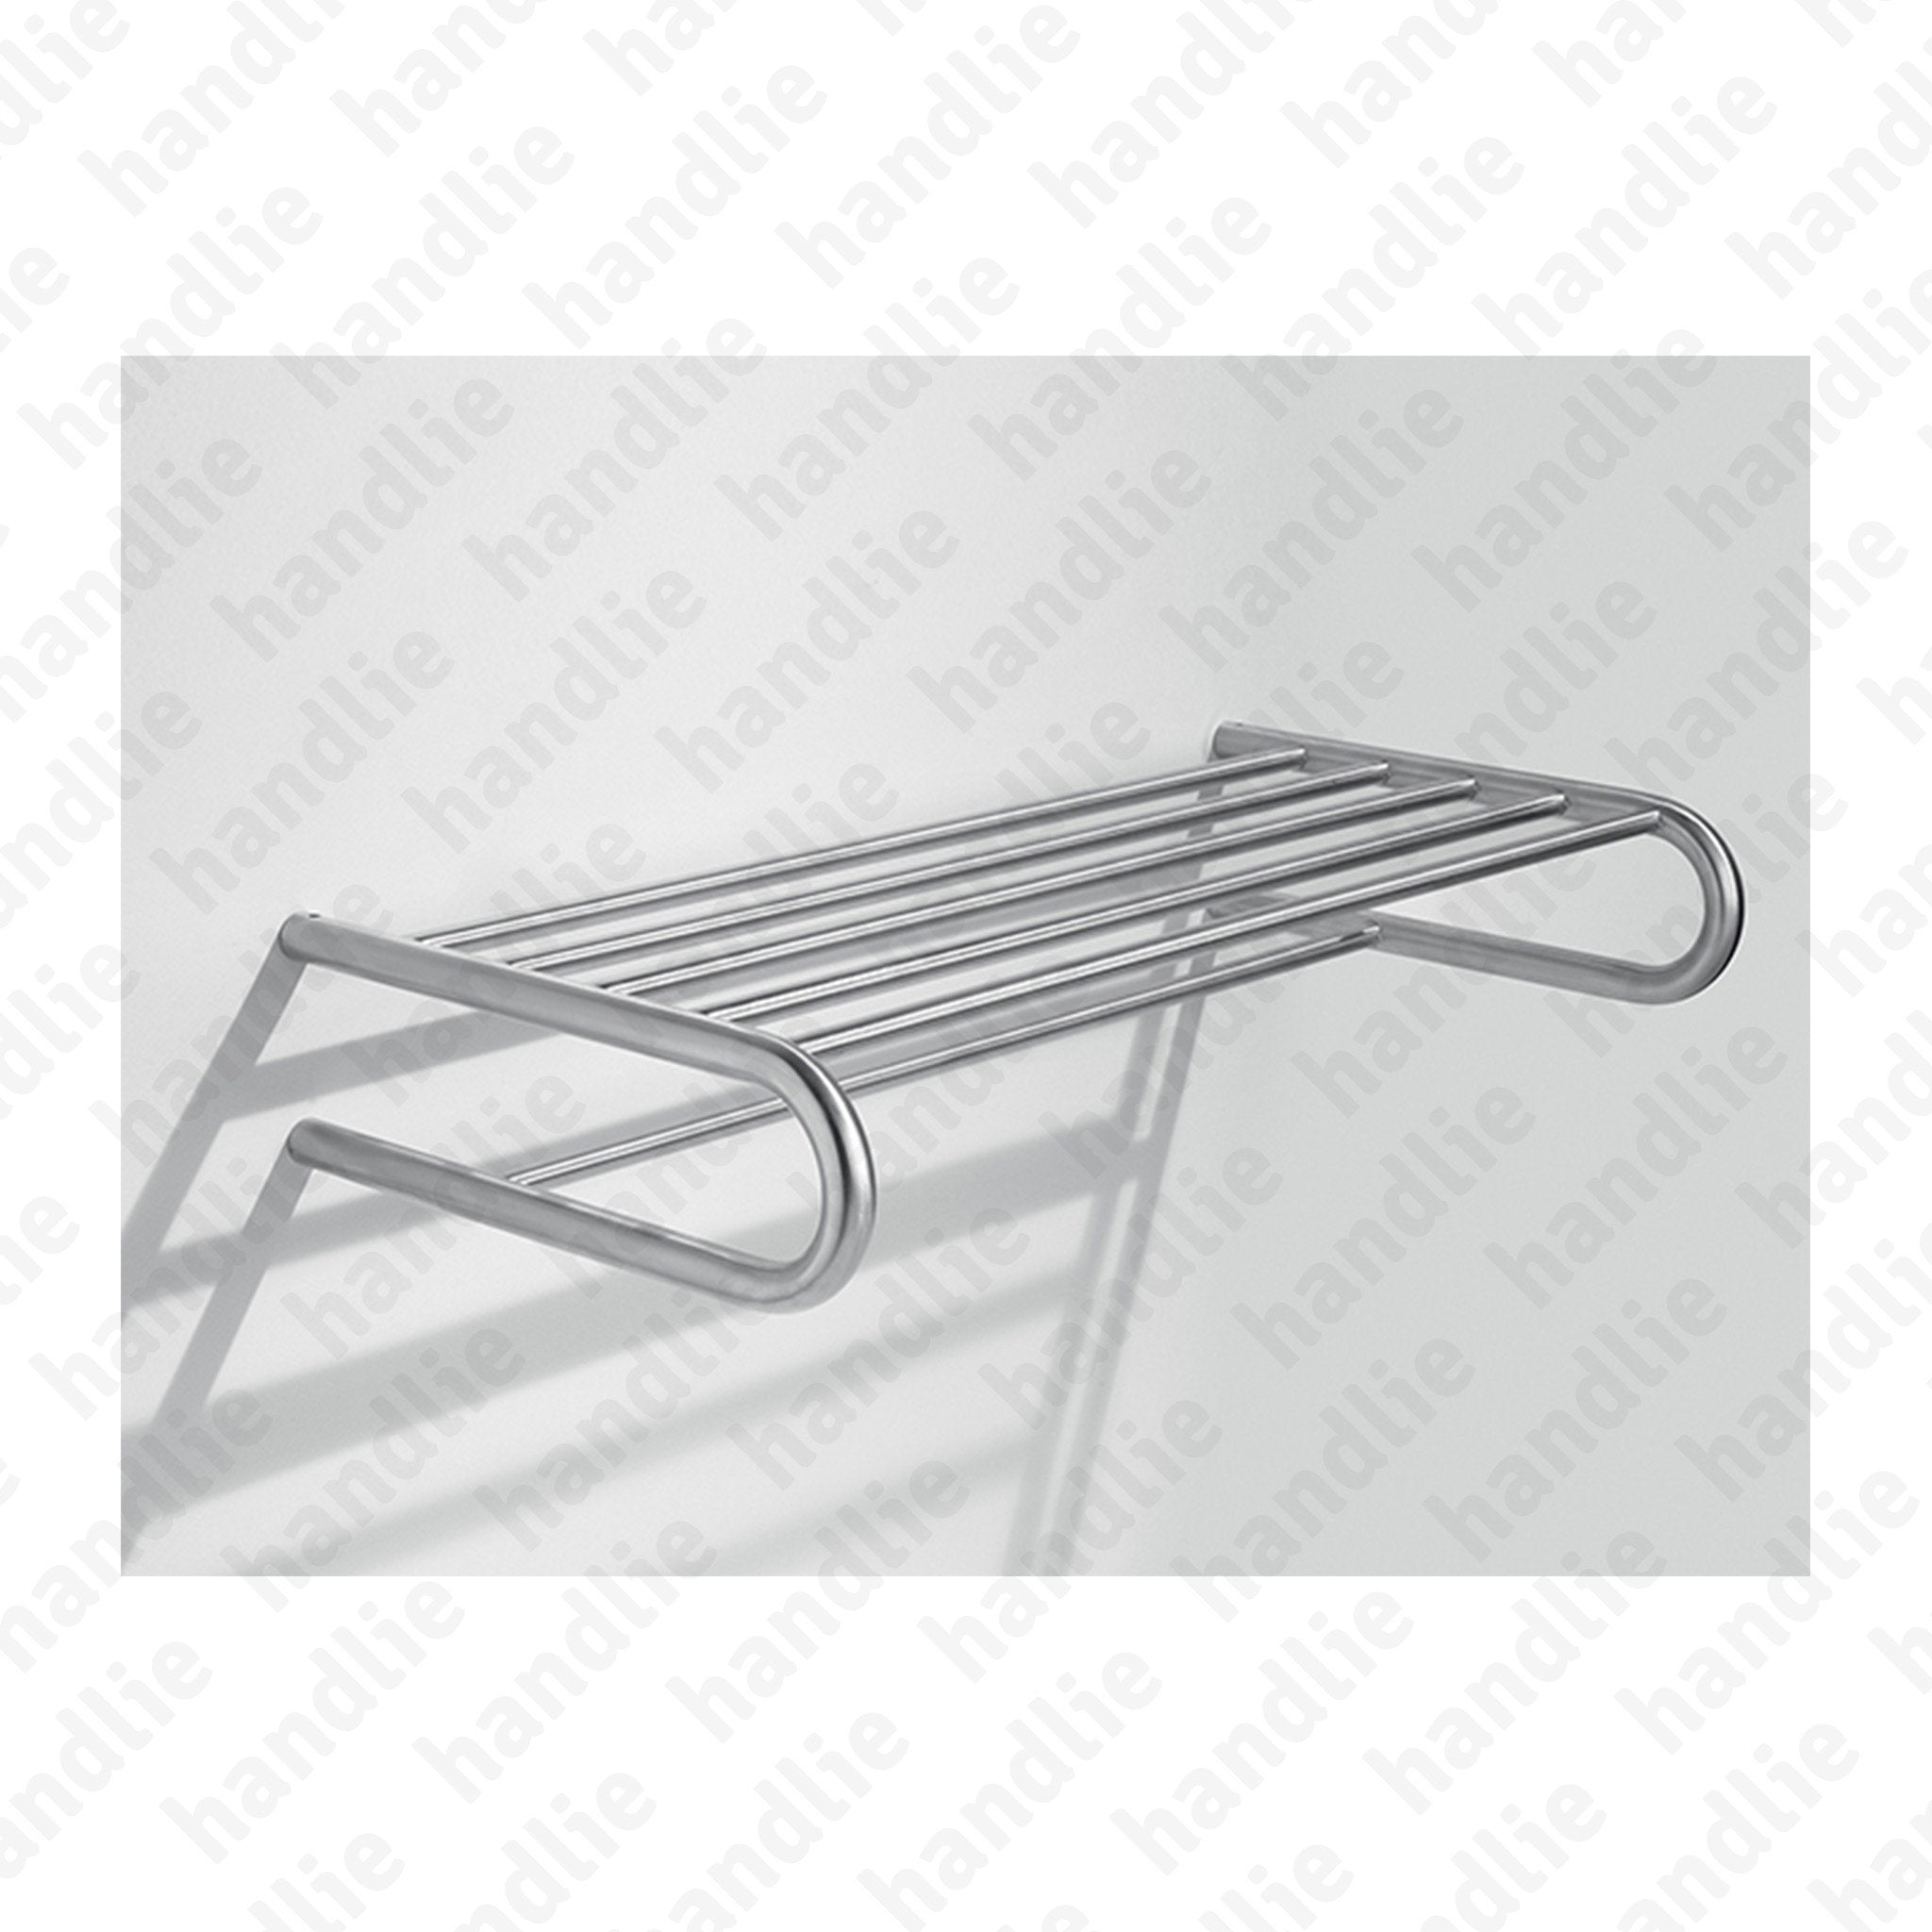 IN.41.132 TONDA Series - Towel rack - Stainless Steel